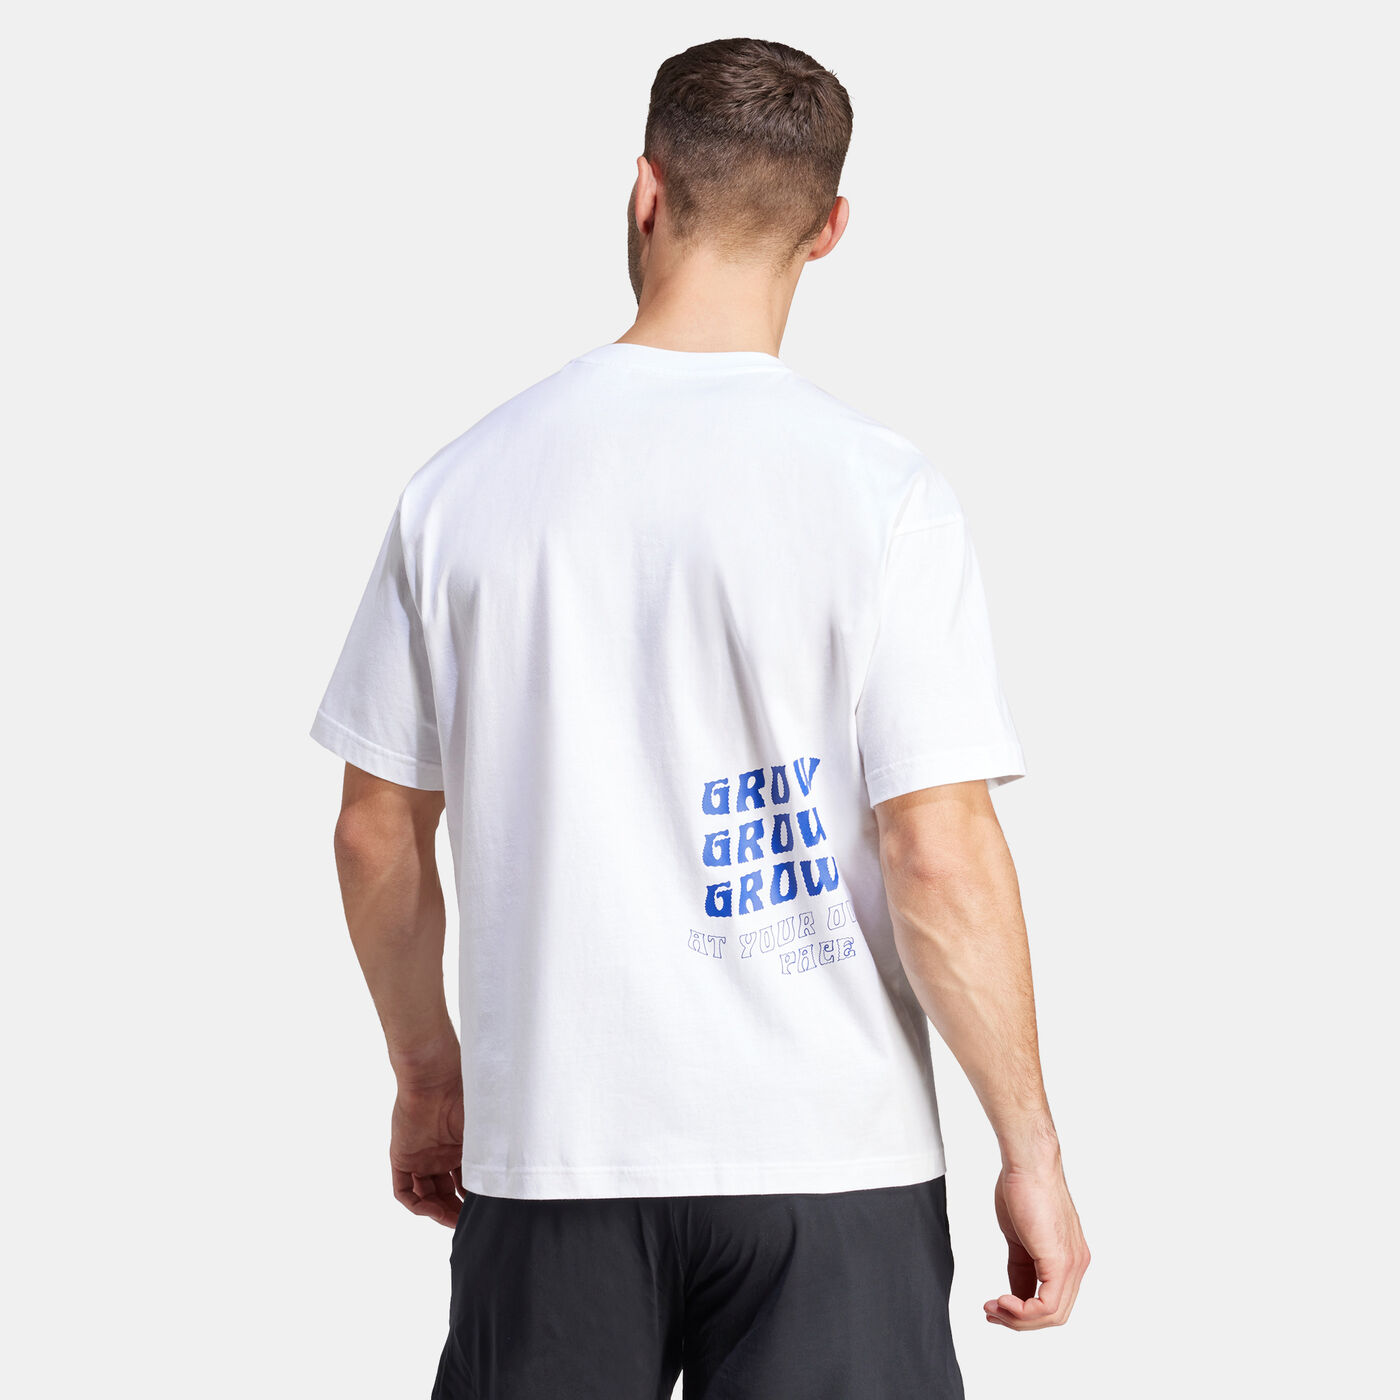 Men's Yoga Training T-Shirt